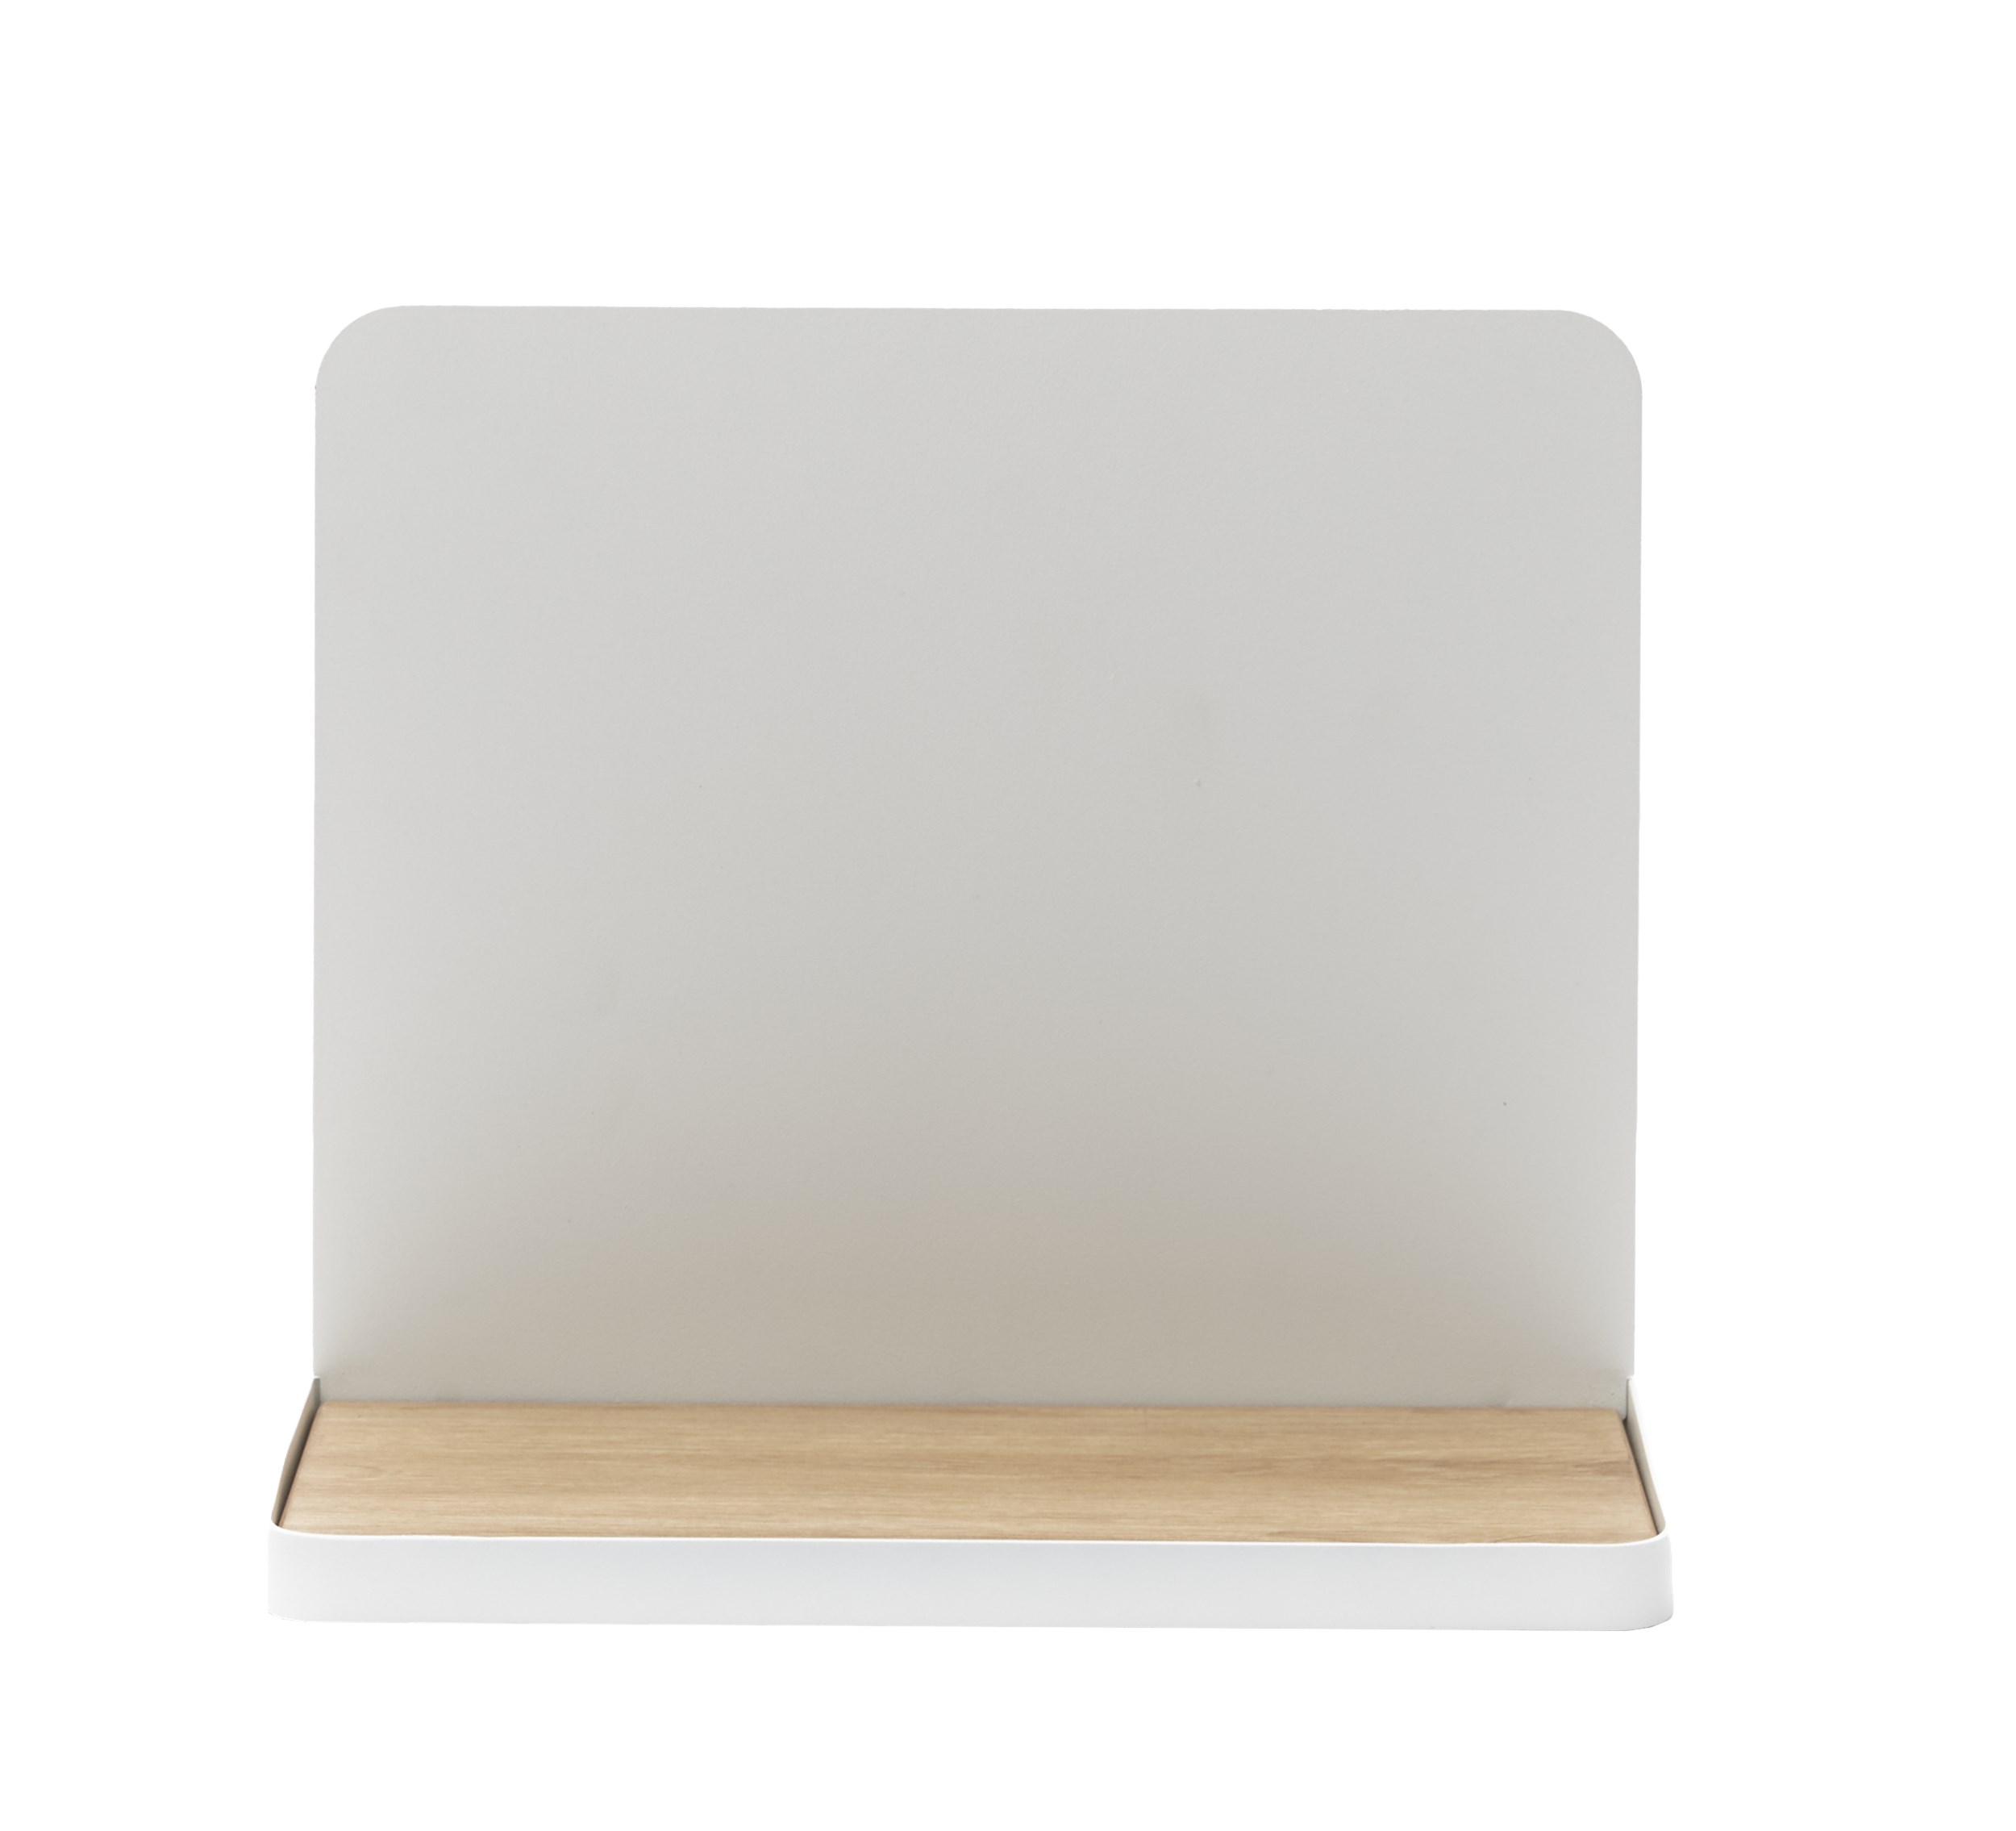 Trey Sängbord - Vit pulverlackerad metall och bordsskiva i vit melamin